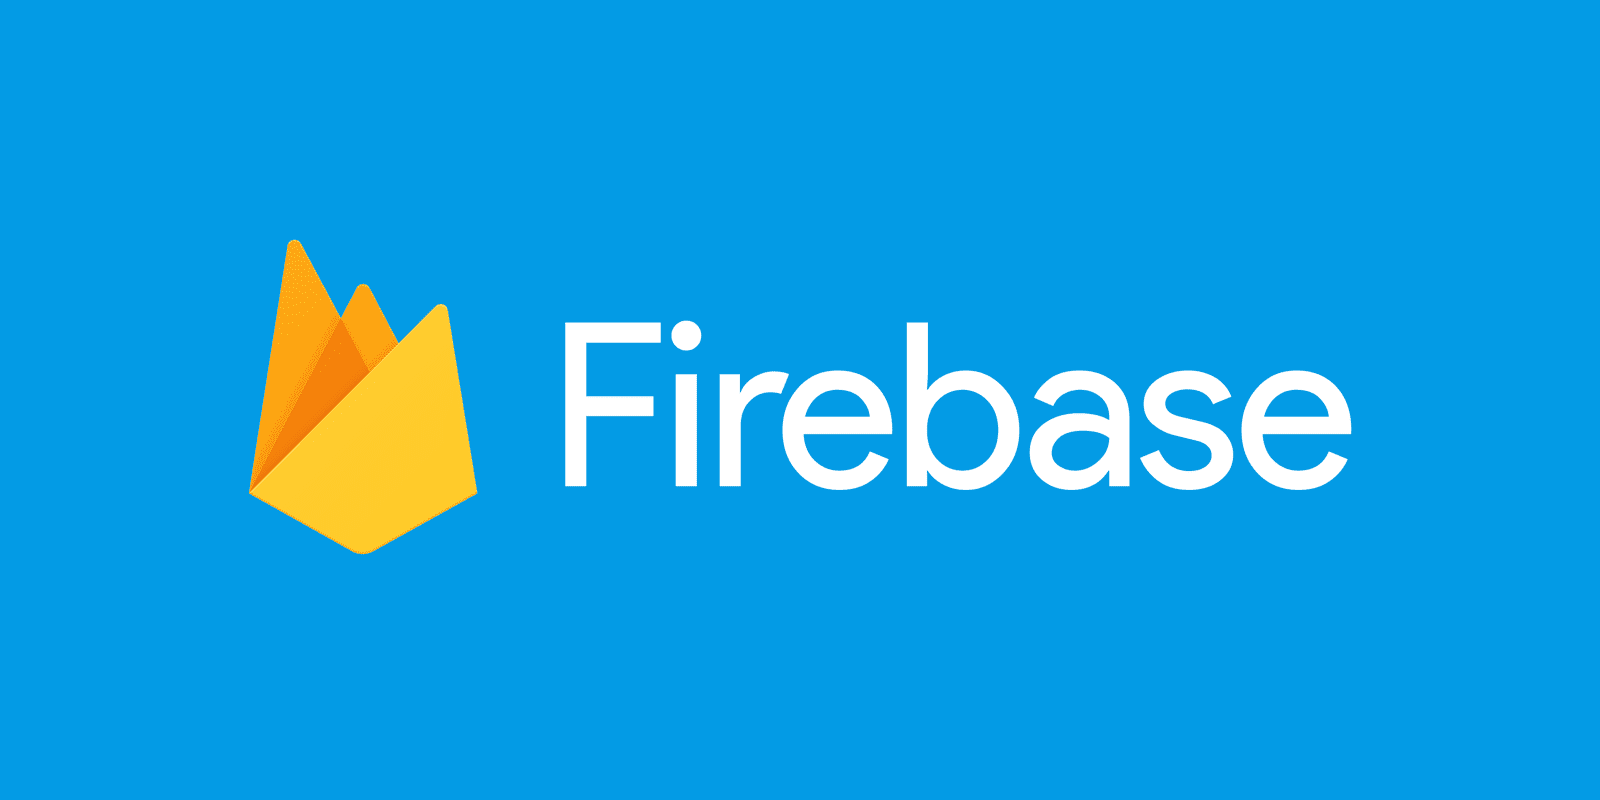 فایربیس (firebase) سرویس جدید گوگل چیست و چه خدماتی ارائه میکند؟